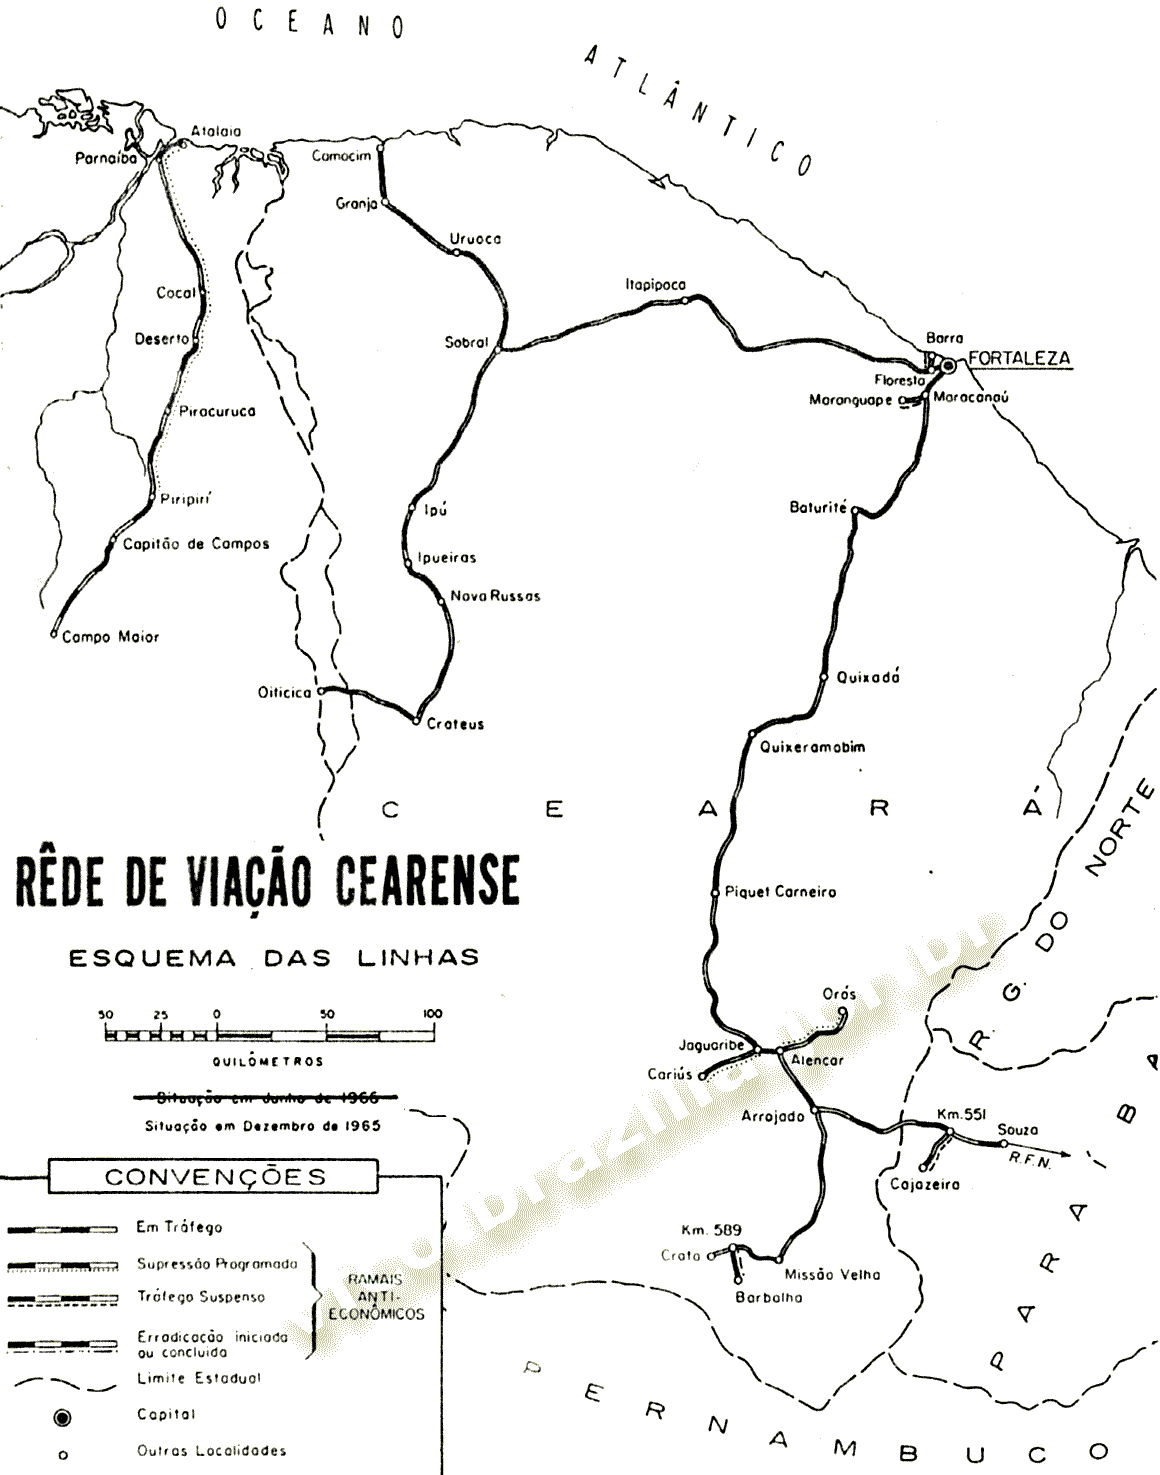 Mapa dos trilhos da Rede de Viação Cearense, da RFFSA - Rede Ferroviária Federal, em 1965